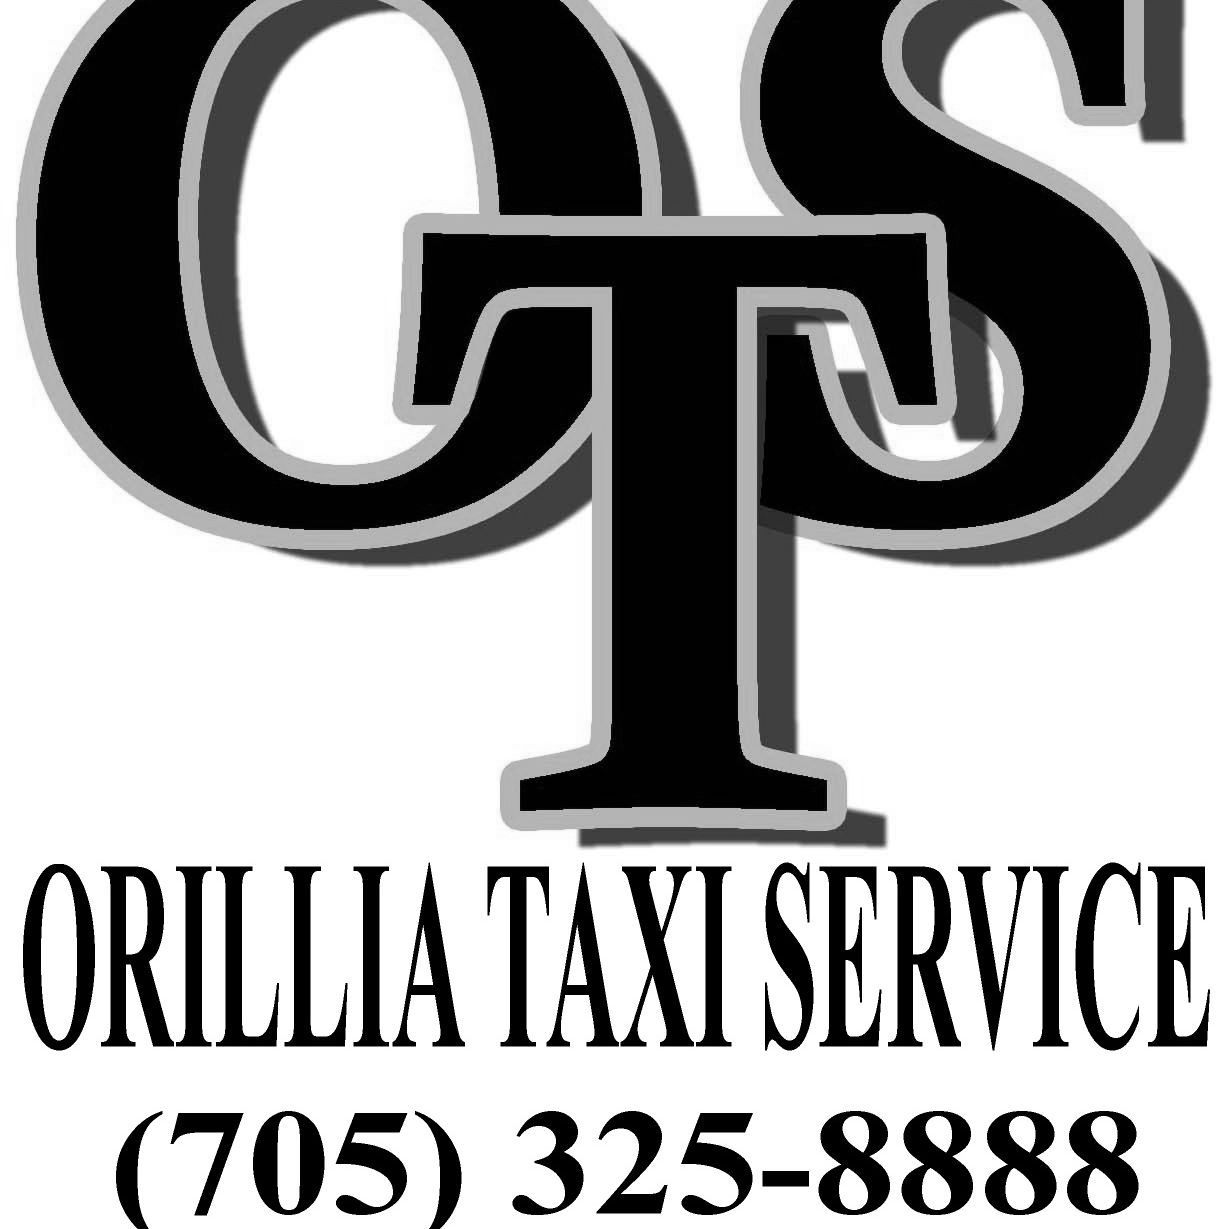 Cab Service in Orillia, Ontario